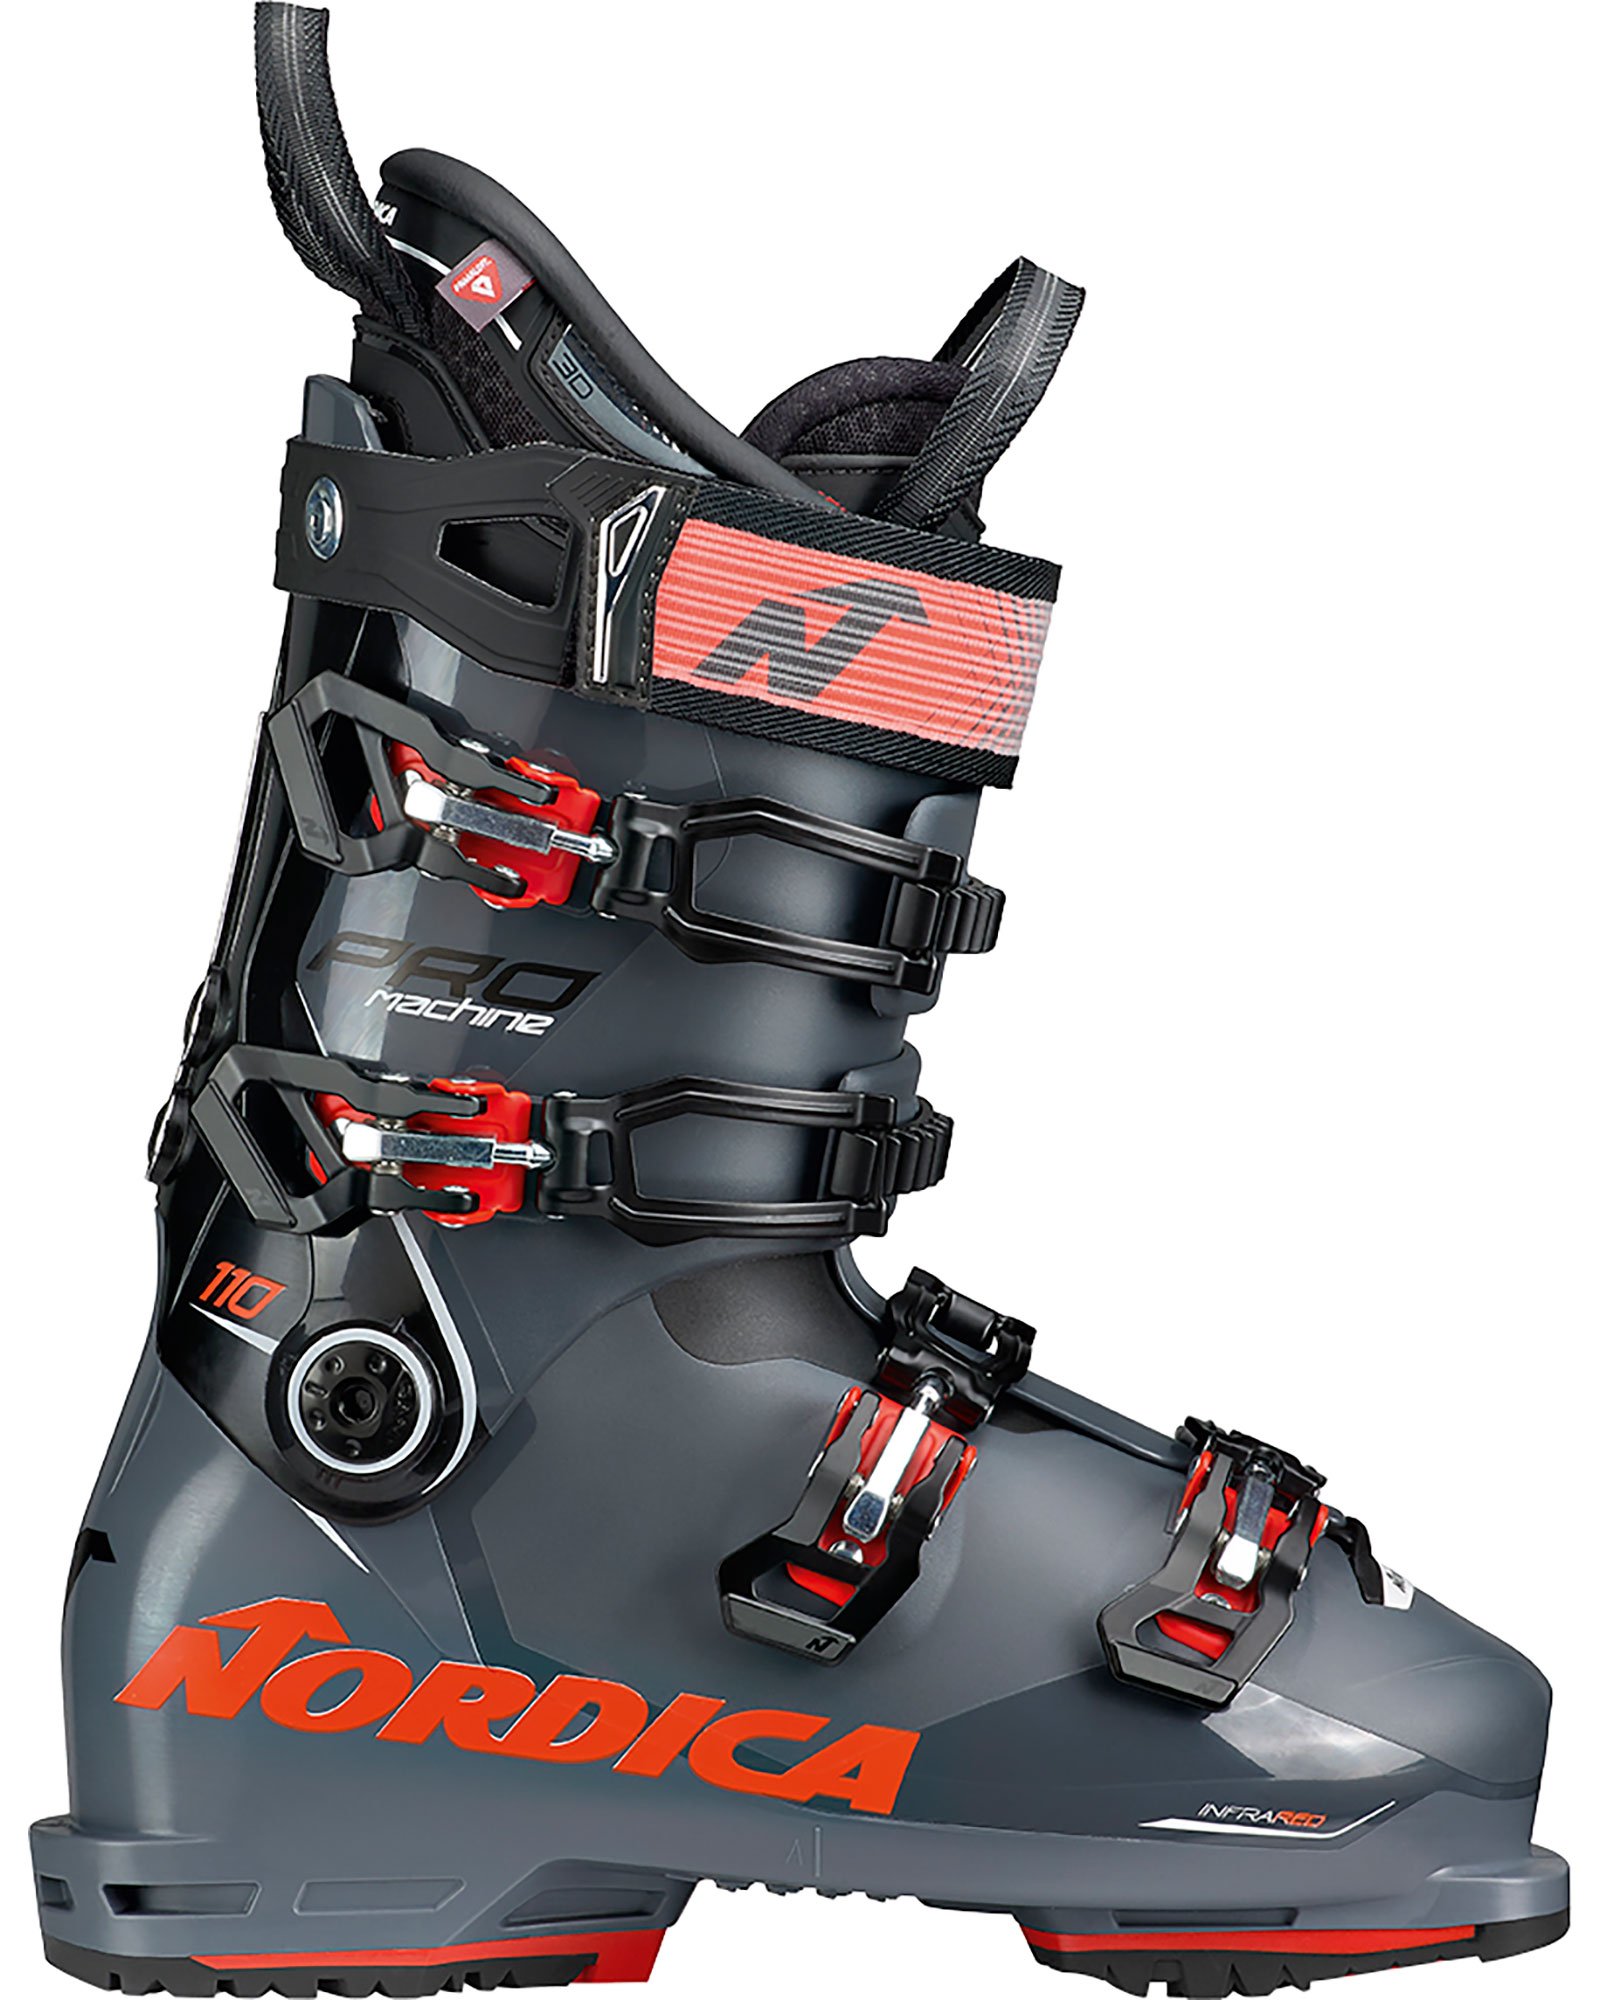 Nordica Promachine 110 GW Men’s Ski Boots 2023 - Anthracite/black/red MP 25.5